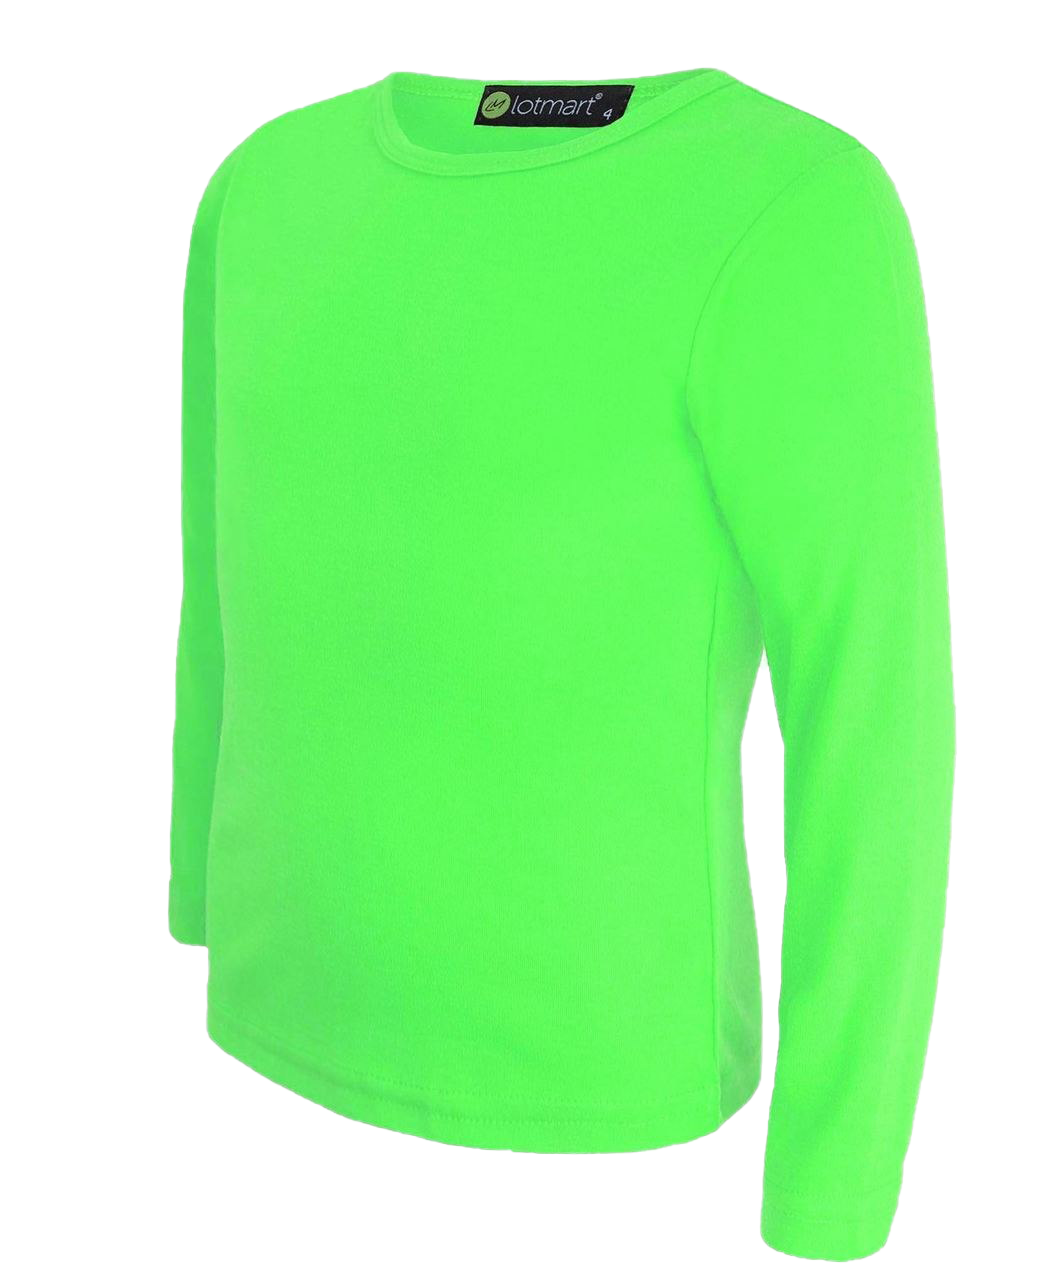 Plain grünes T-Shirt PNG-Foto